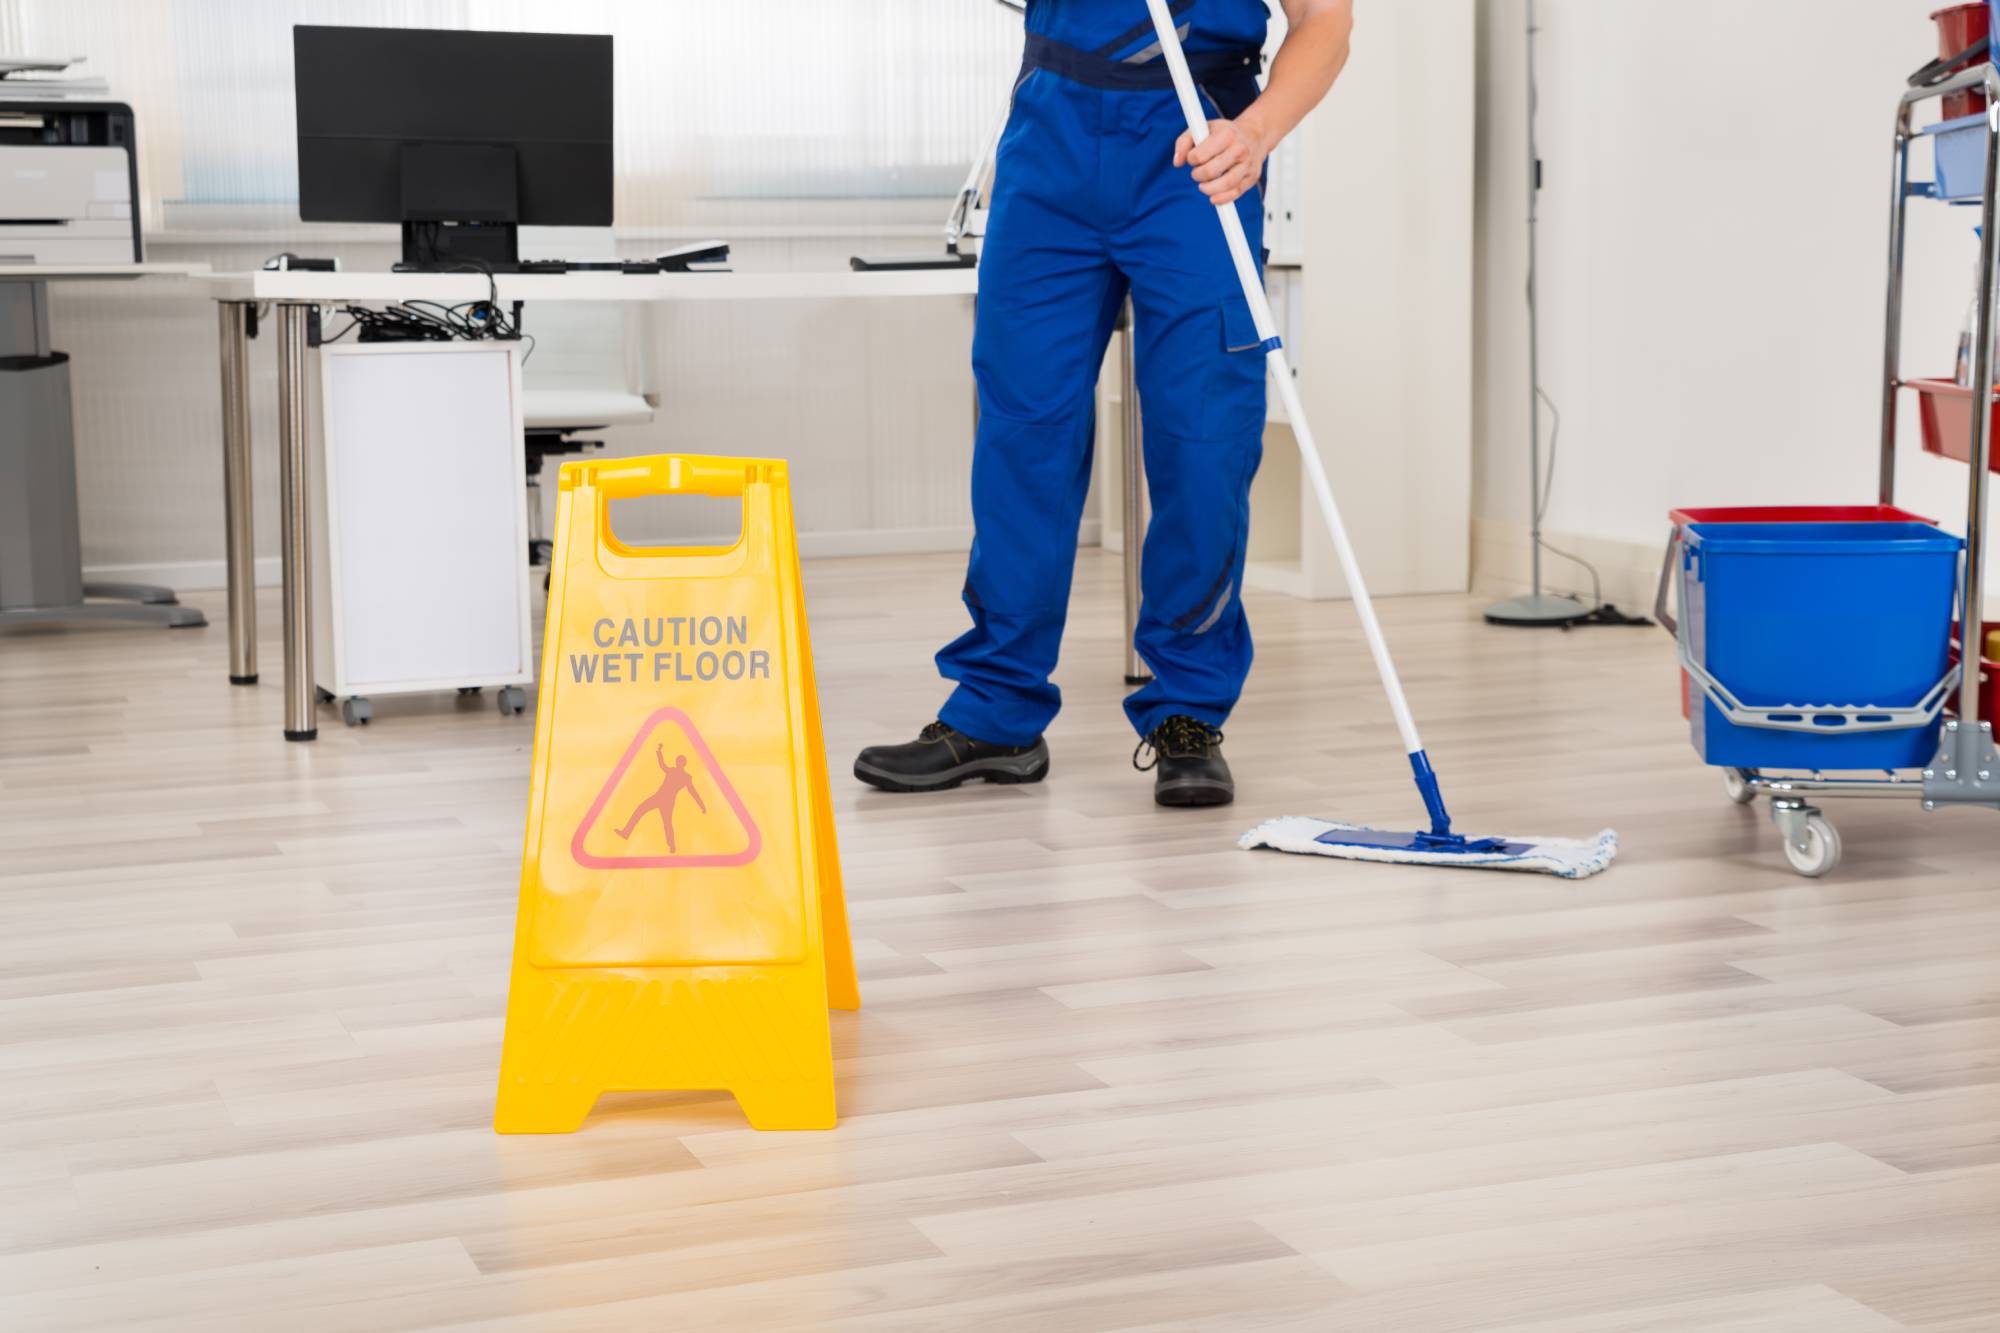 Eine Reinigungsfachkraft in blauer Arbeitskleidung steht in einem Büroraum und reinigt Laminatboden mit einem Wischmopp. Ein gelbes Warnschild im Vordergrund warnt vor Rutschgefahr.